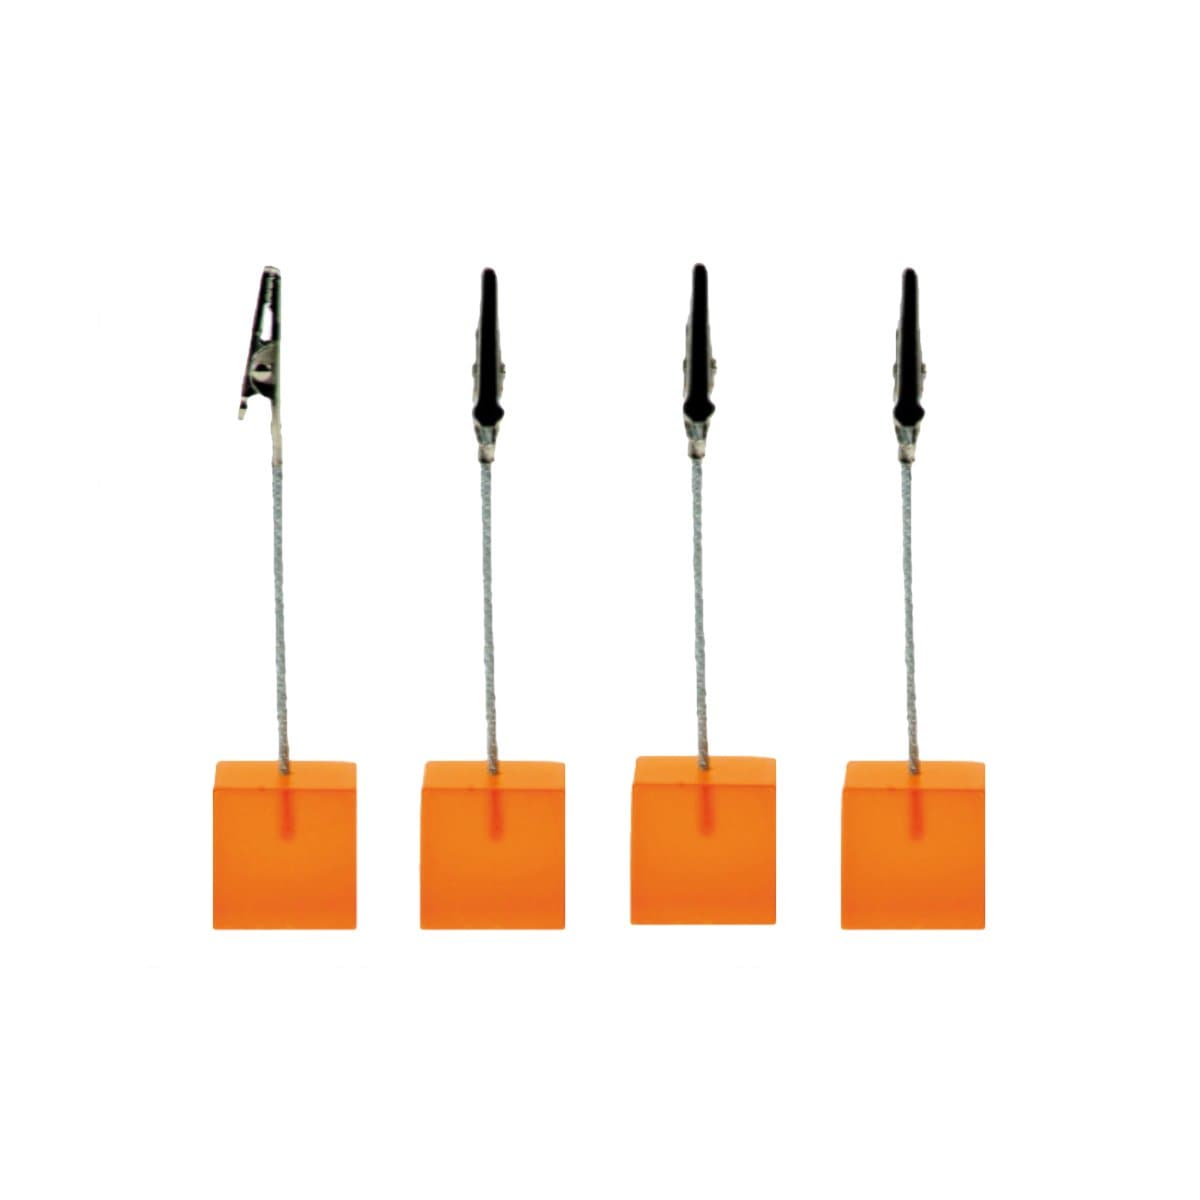 Trendform Memo Clip CUBE, 12 cm High, 4/pack, Translucent Orange